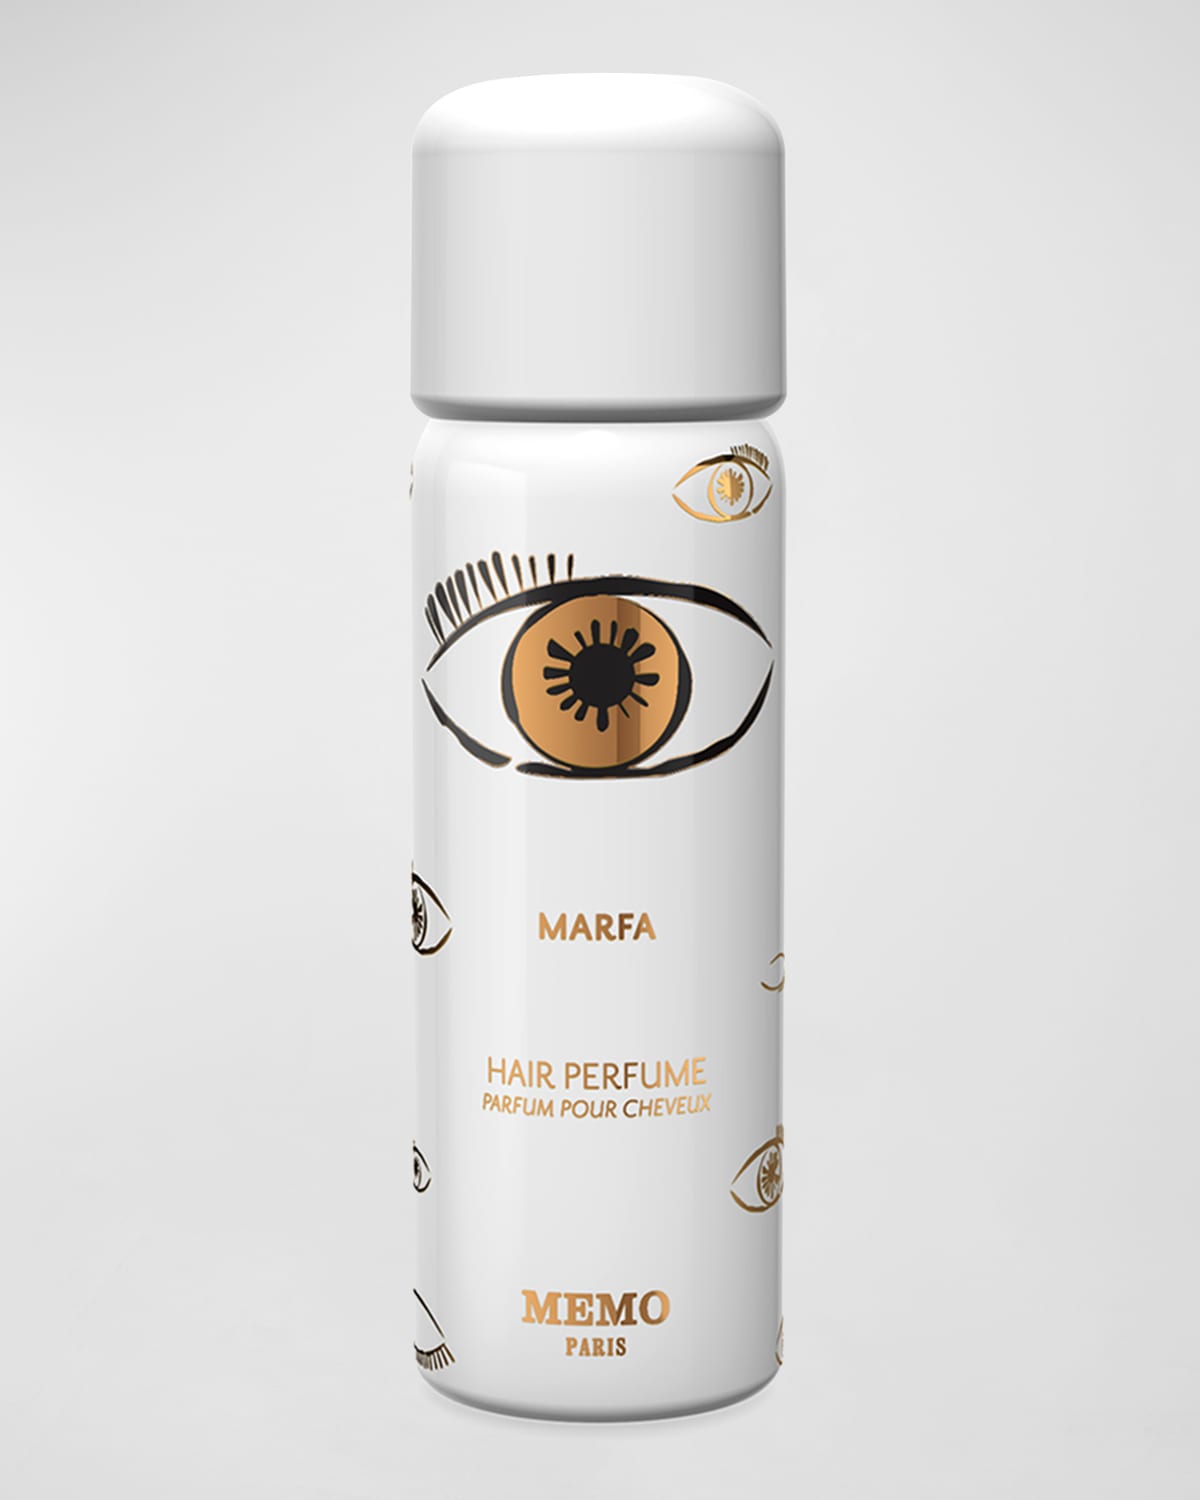 Memo Paris 2.7 oz. Hair Perfume Marfa